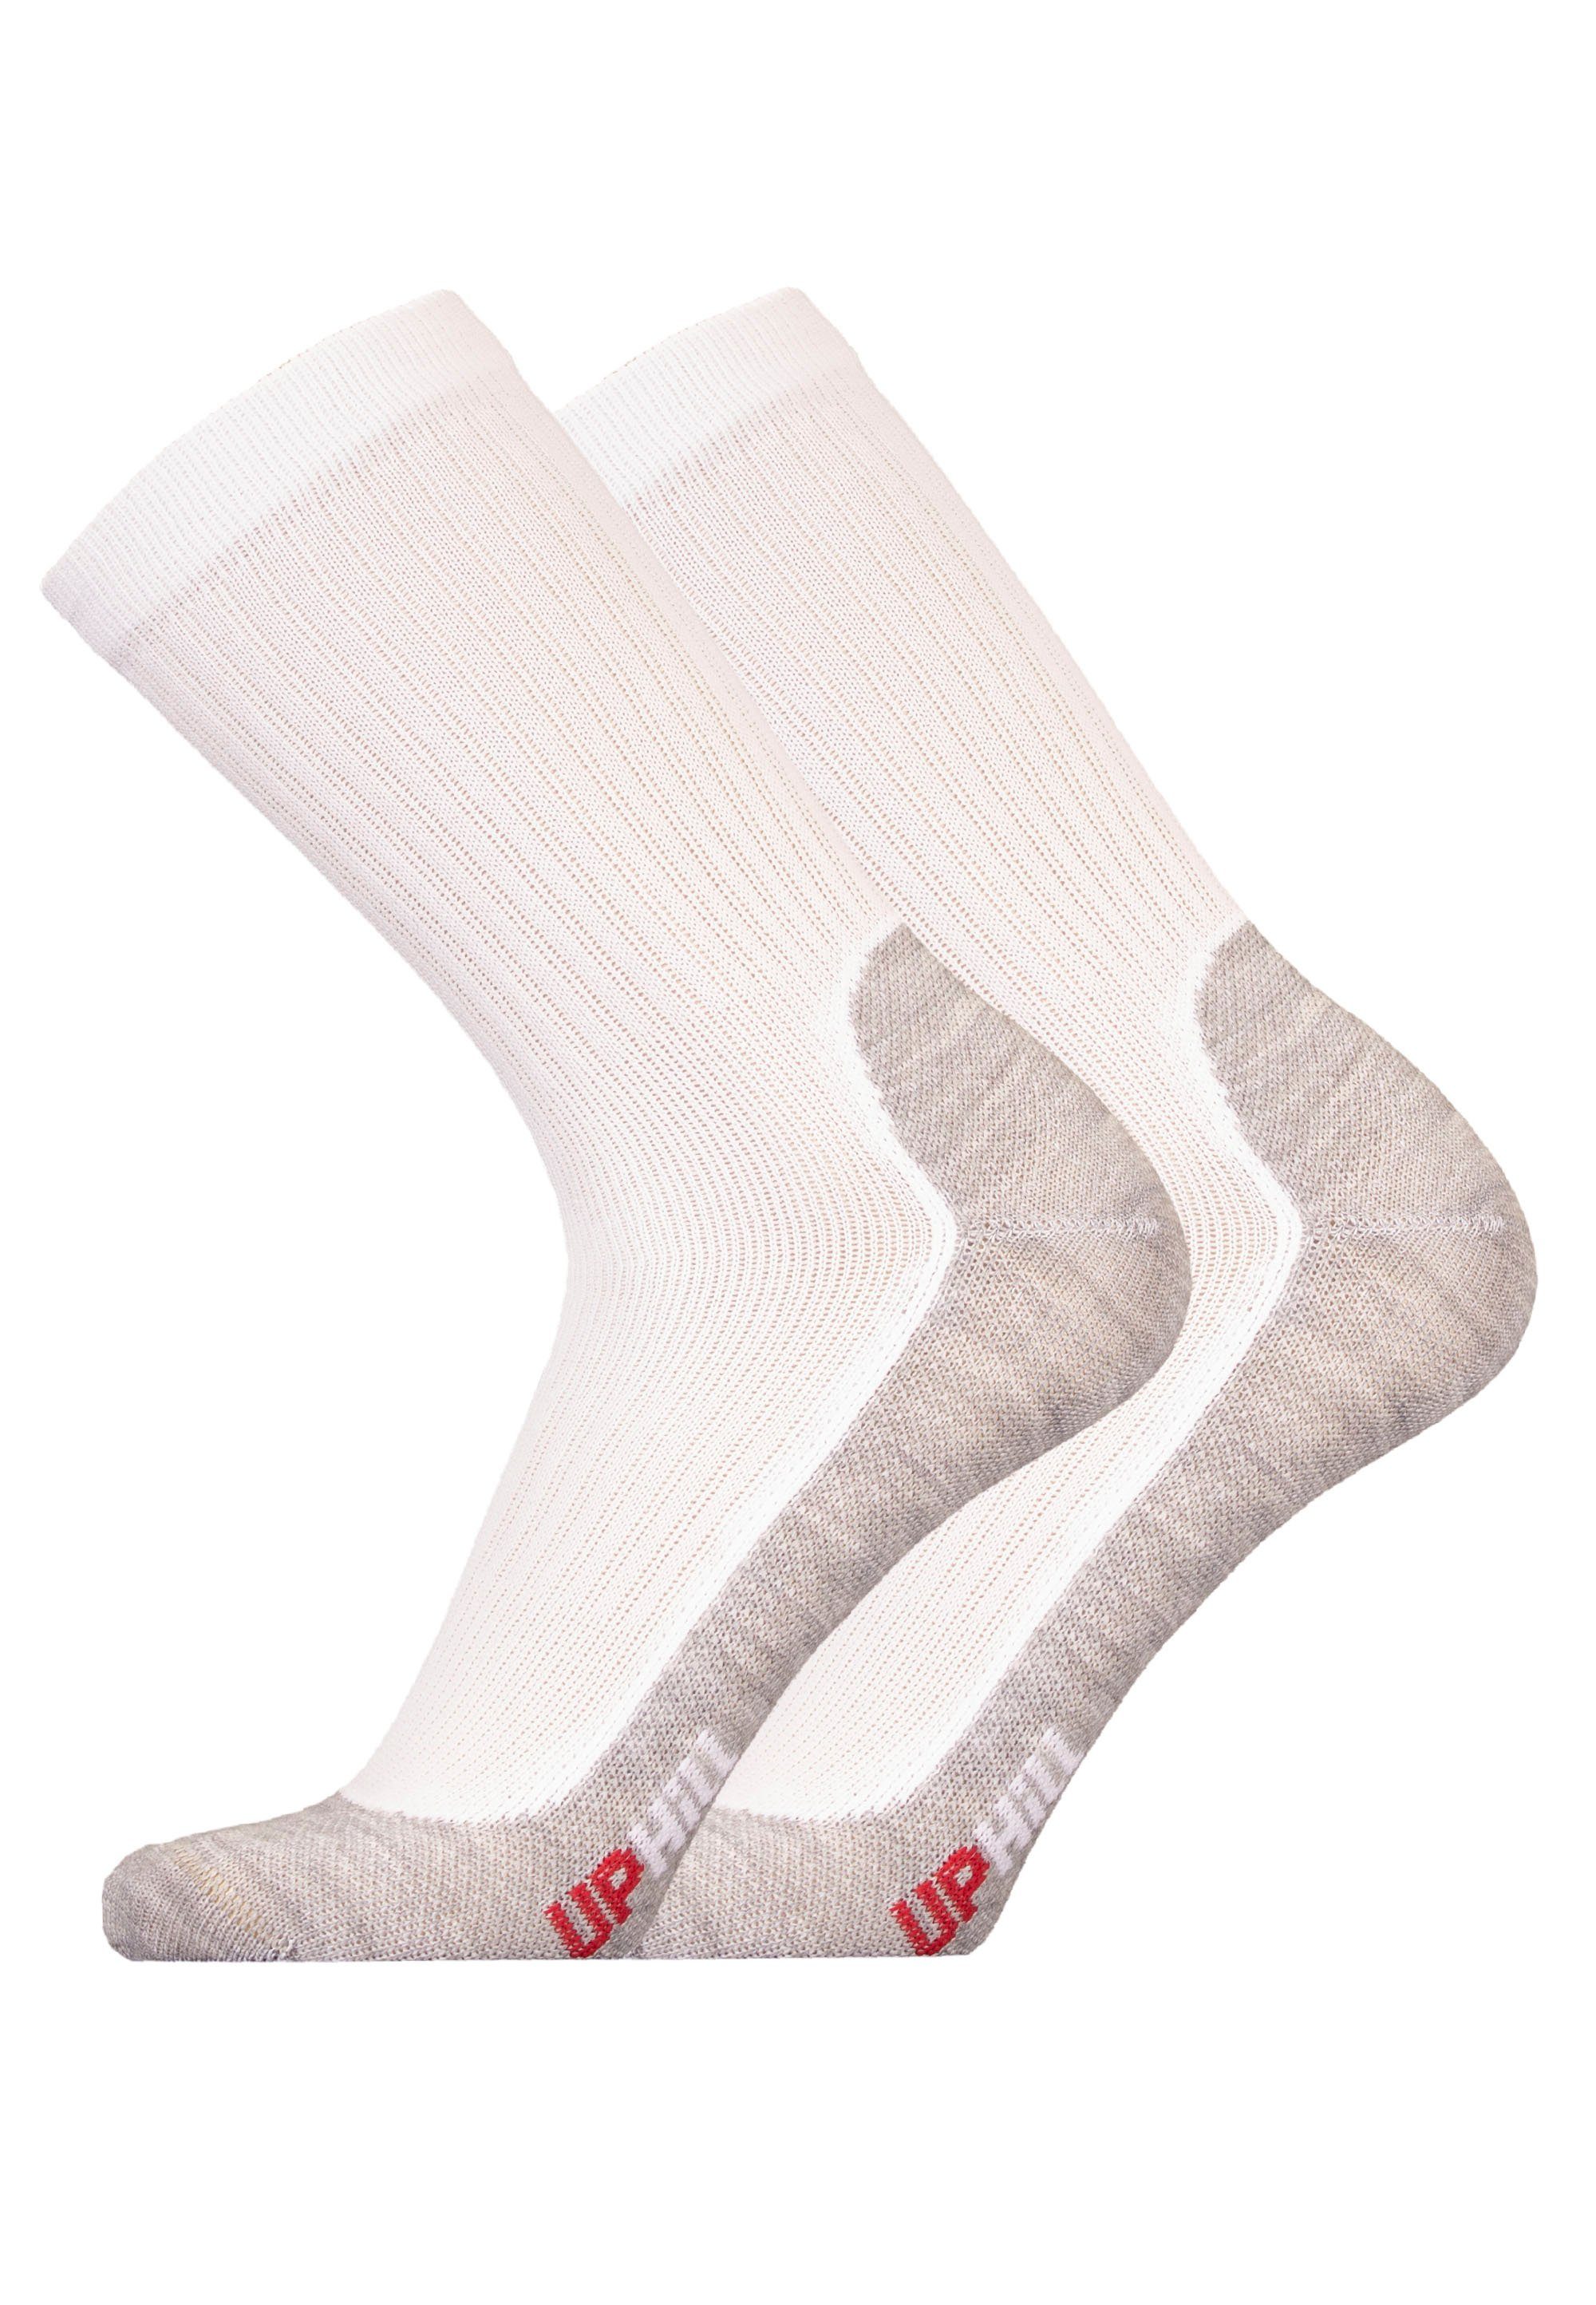 Pack UphillSport Socken 2er (2-Paar) atmungsaktiver weiß-grau mit WINTER Funktion XC